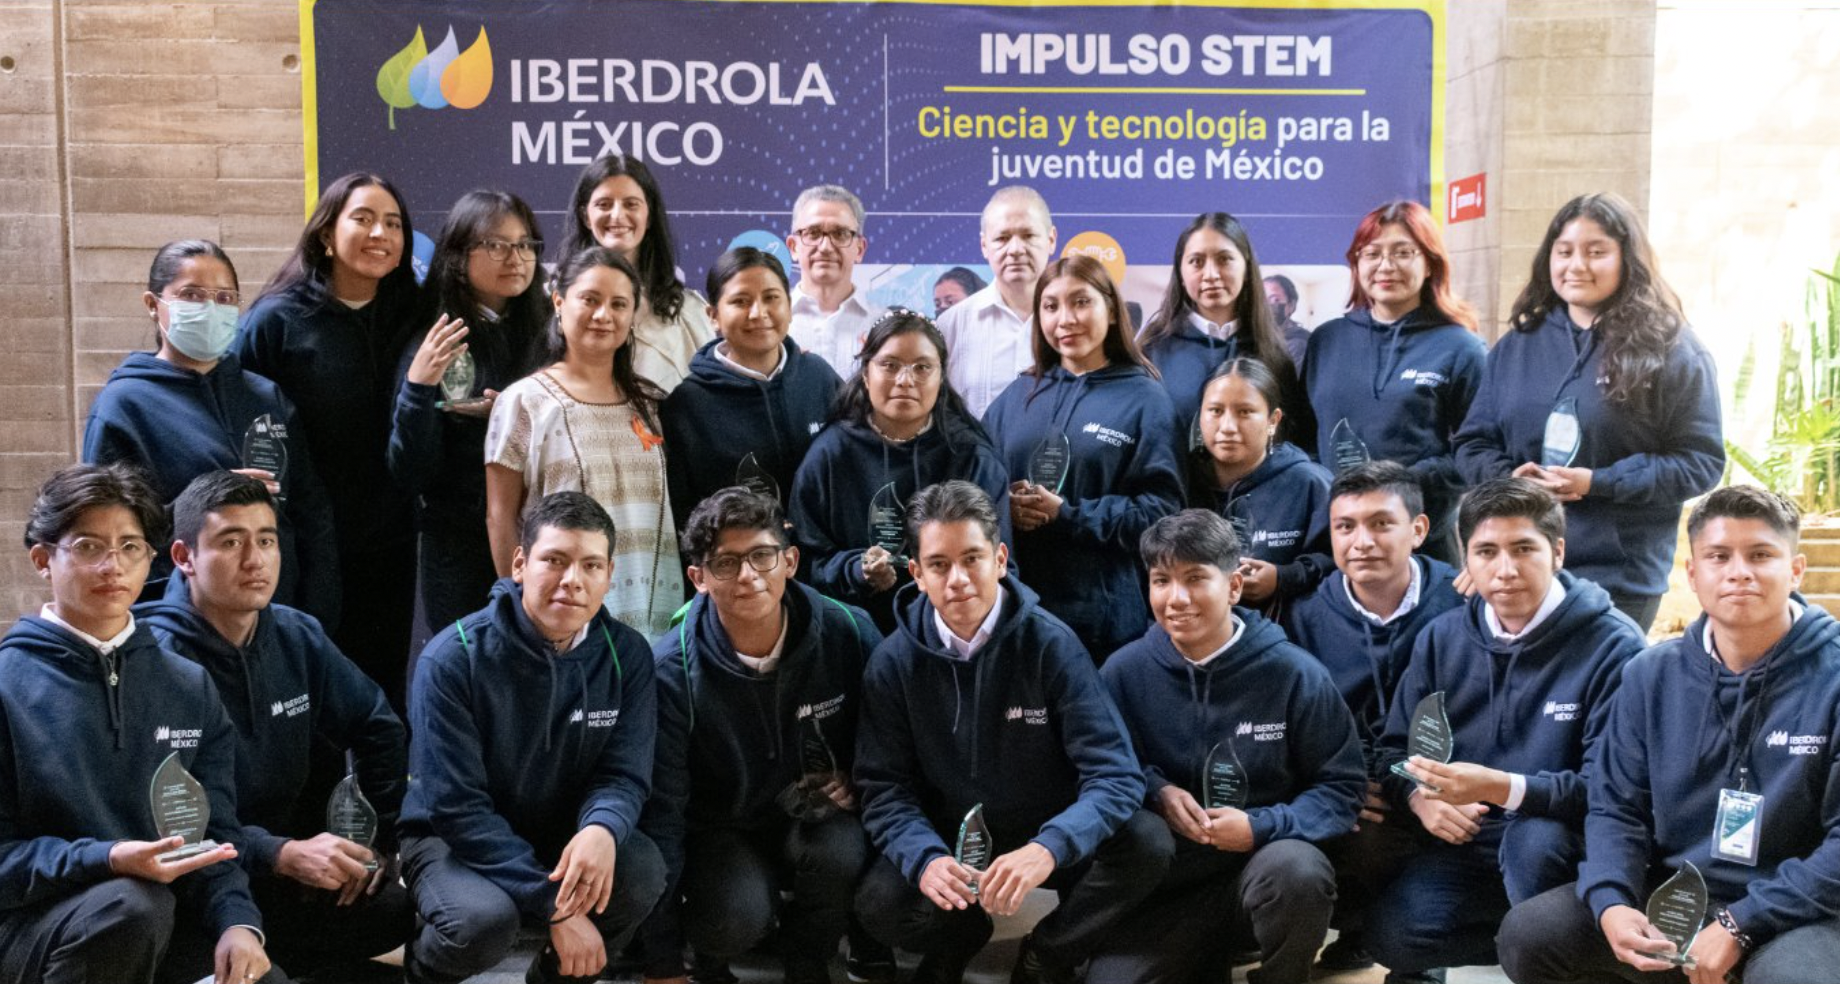 Iberdrola México beca a 19 estudiantes de carreras STEM en Oaxaca